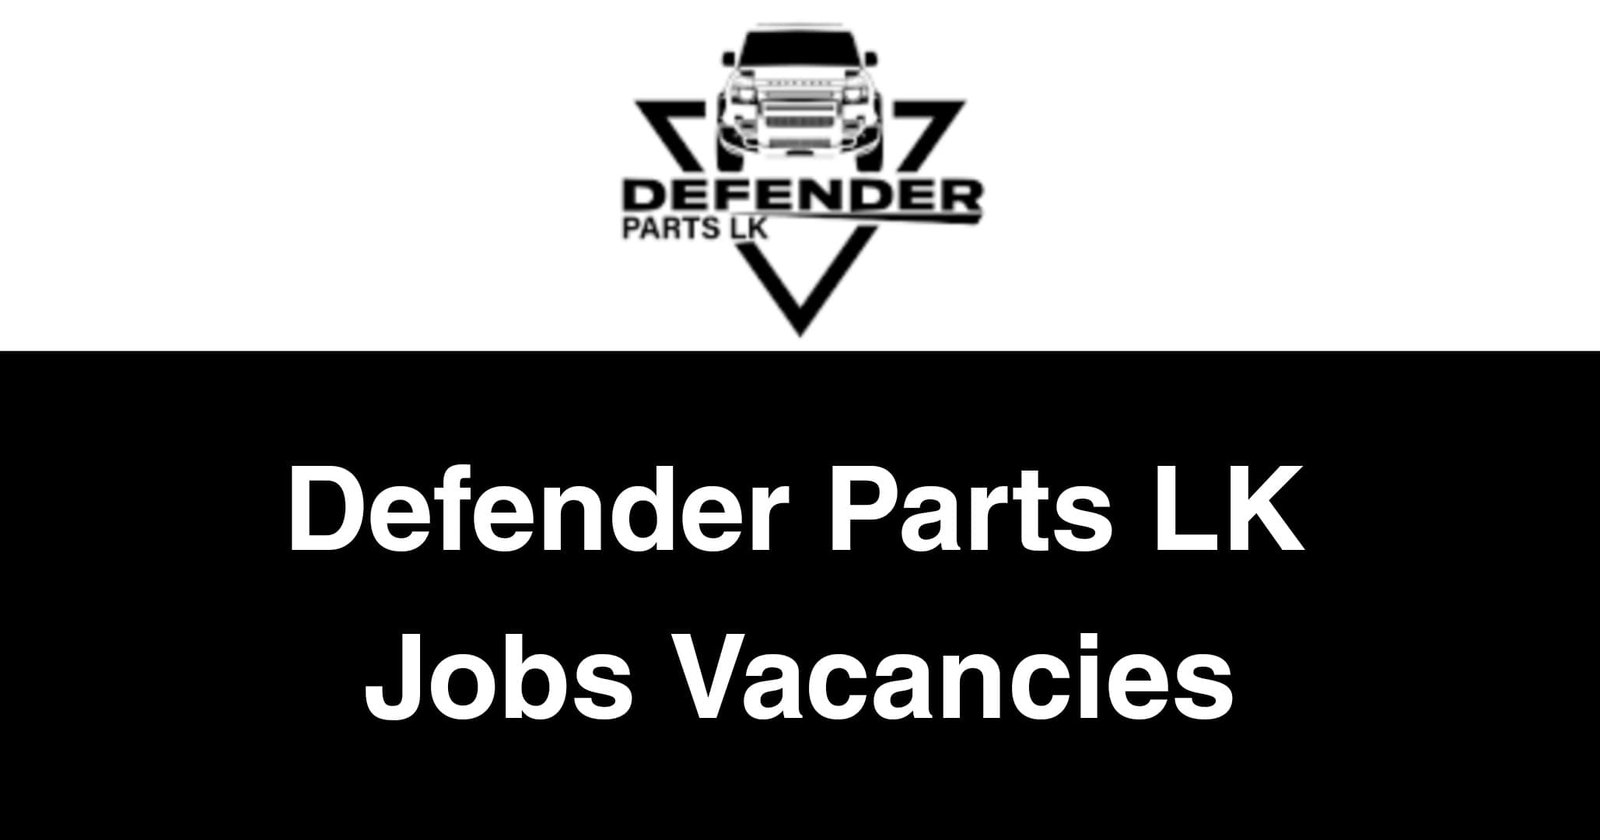 Defender Parts LK Jobs Vacancies